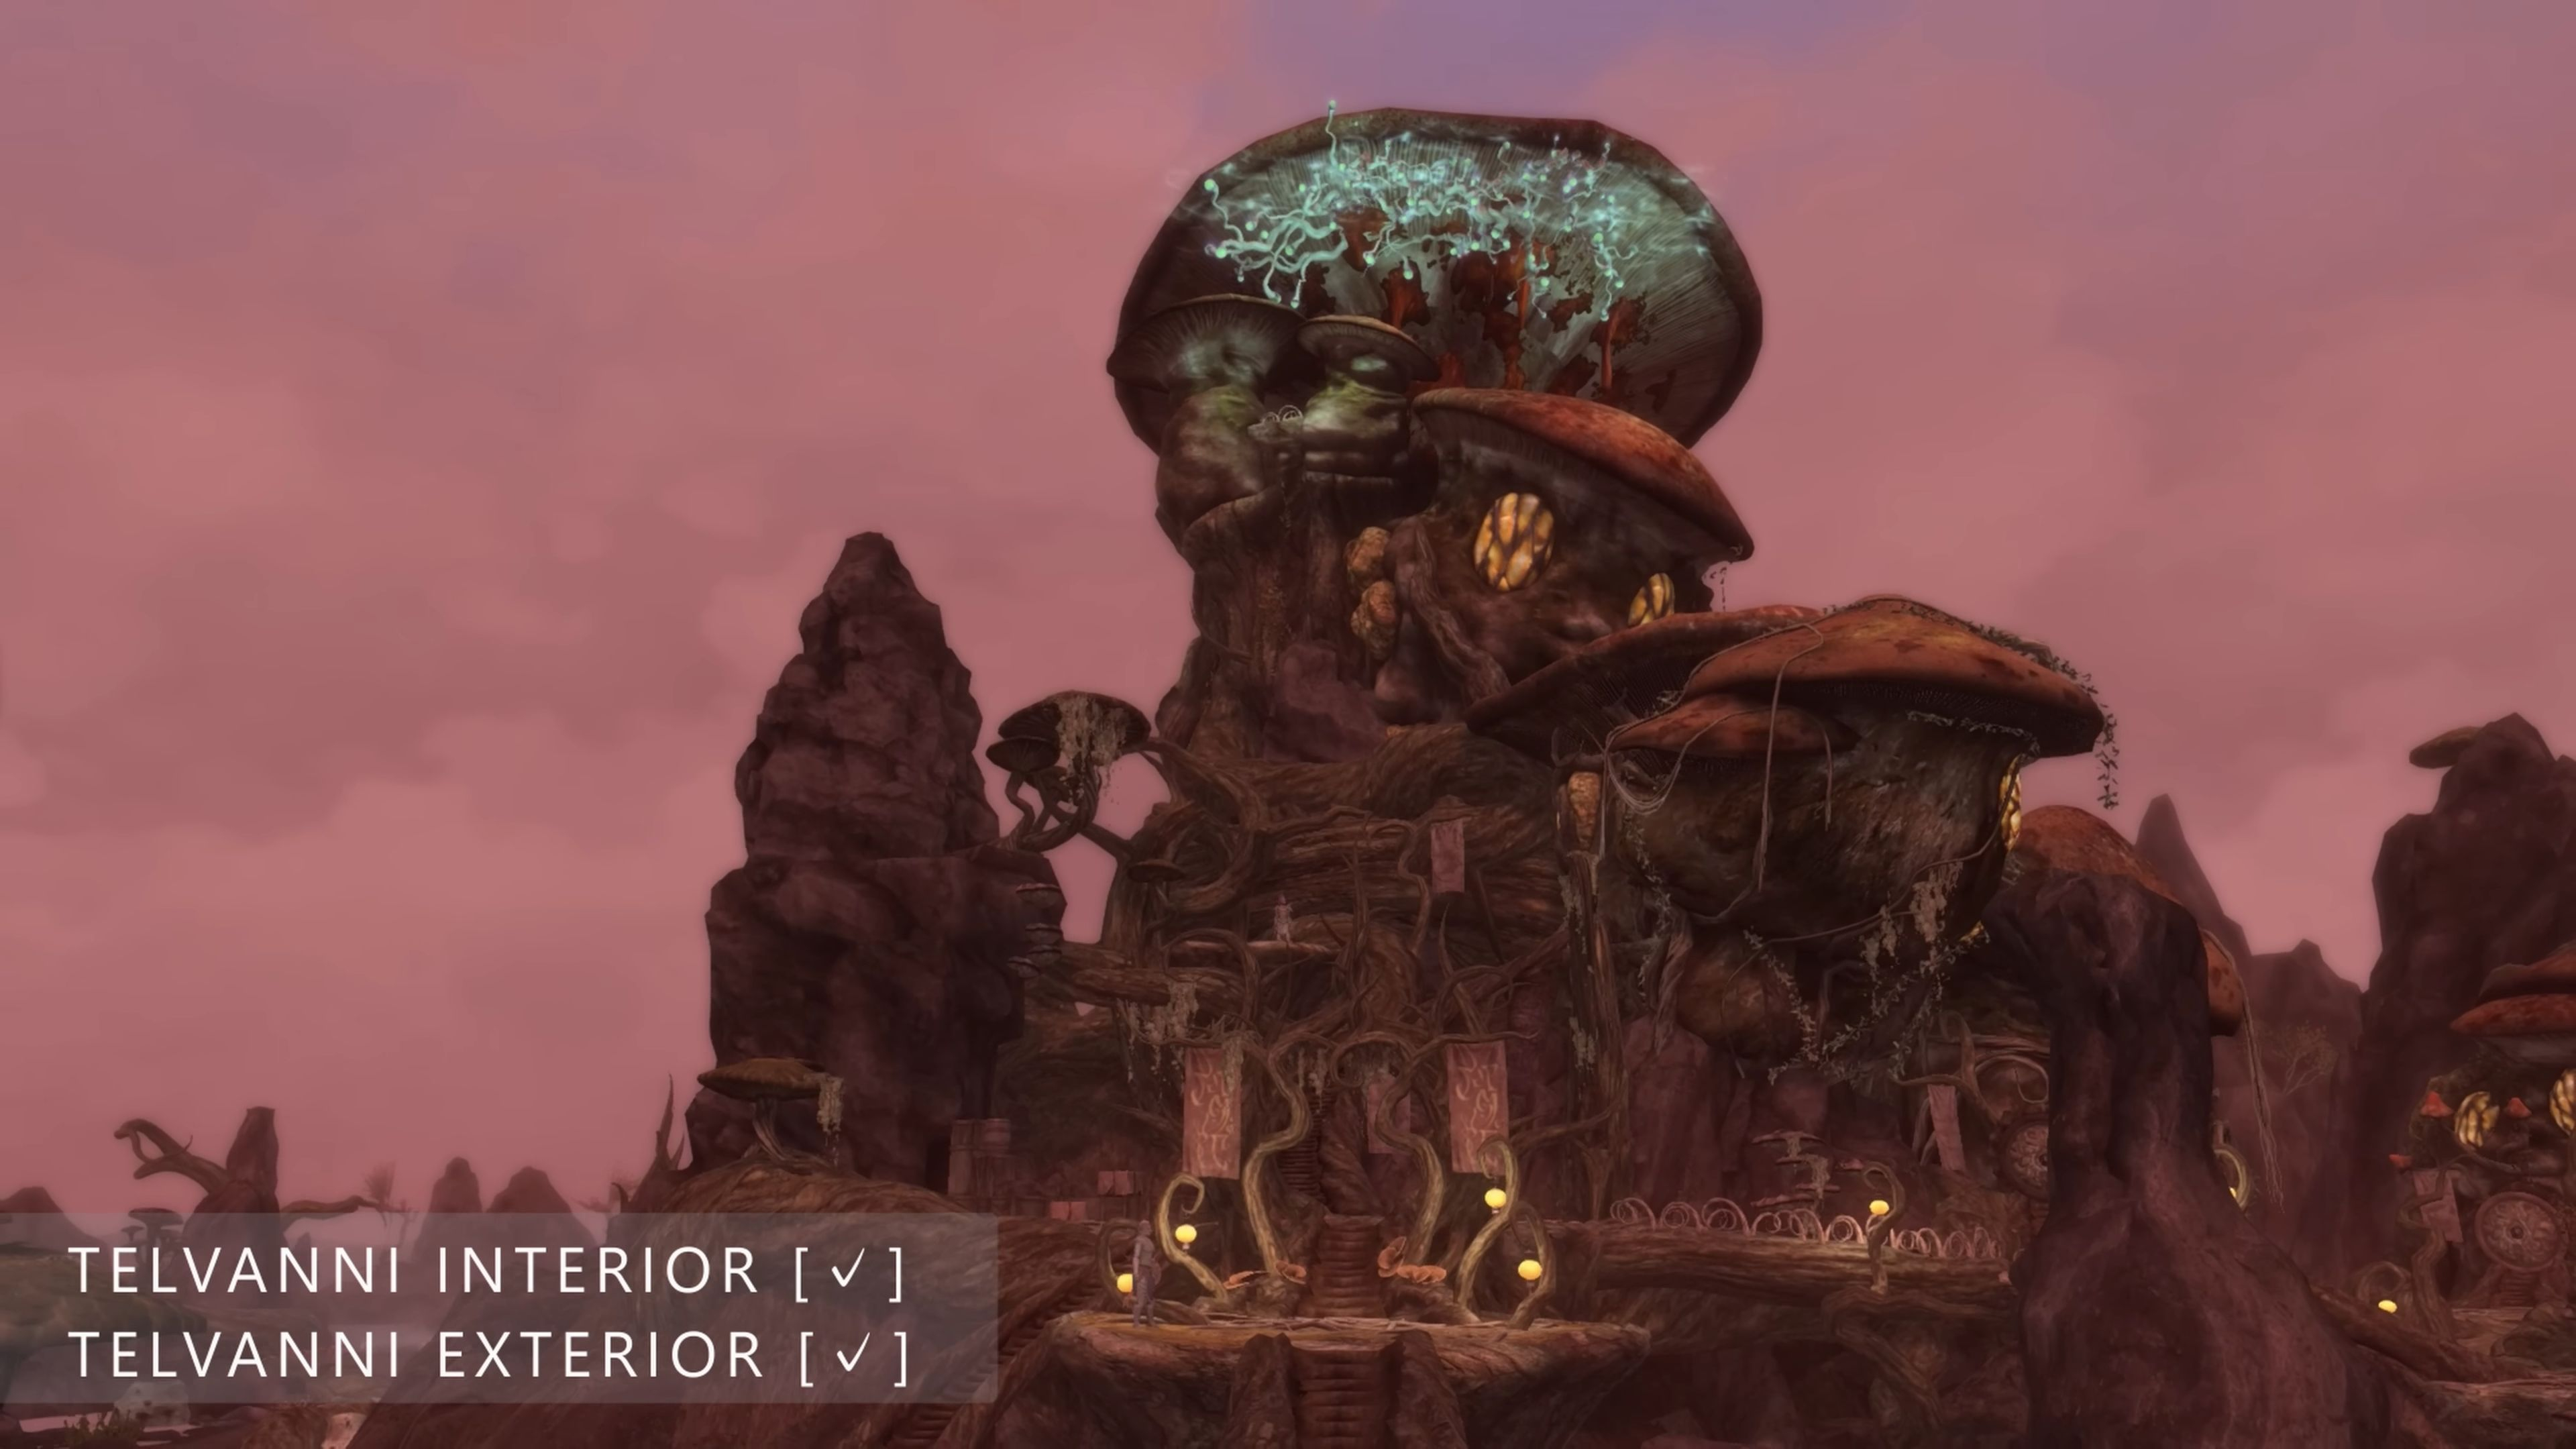 Буду слишком занят этим, чтобы с нетерпением ждать TES VI: видео о прогрессе разработки фанатского ремейка Morrowind на движке Skyrim воодушевило игроков